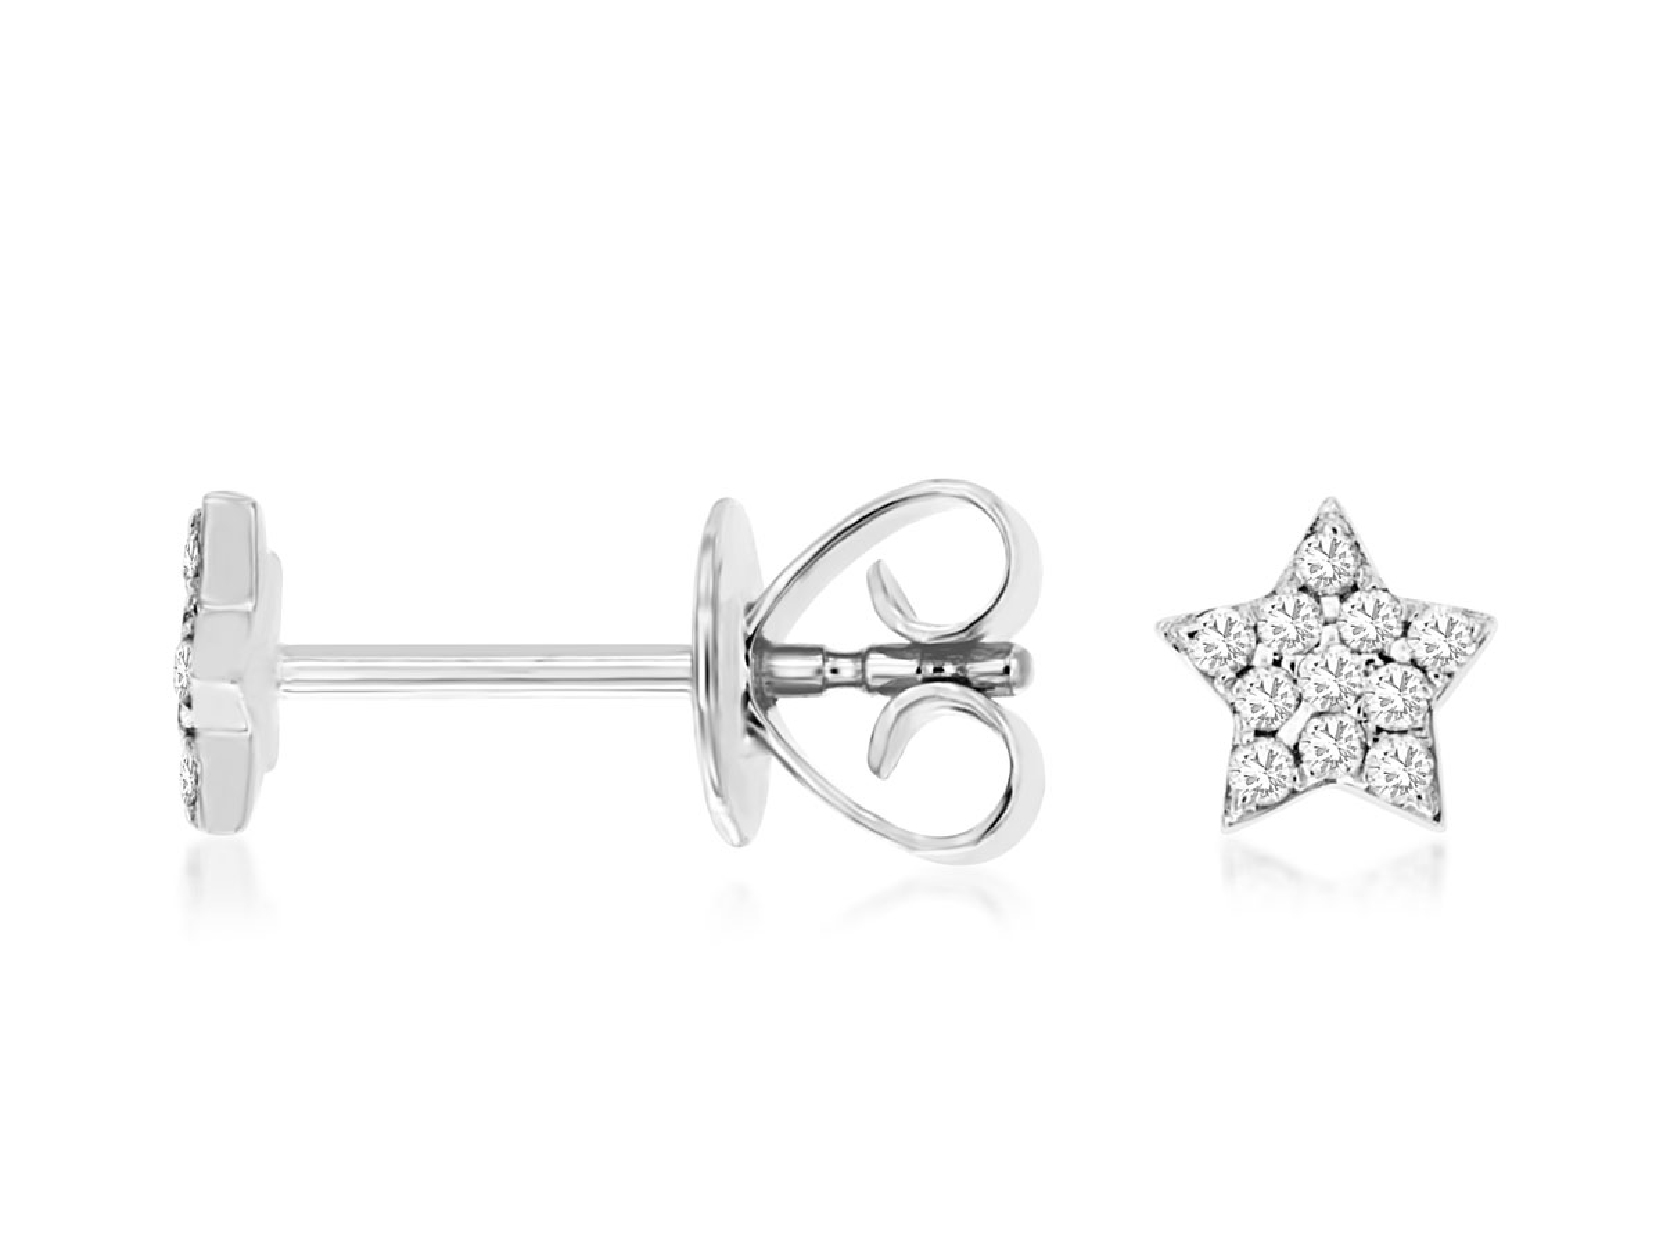 14K White Gold Diamond Star Stud Earrings
0.10CTTW